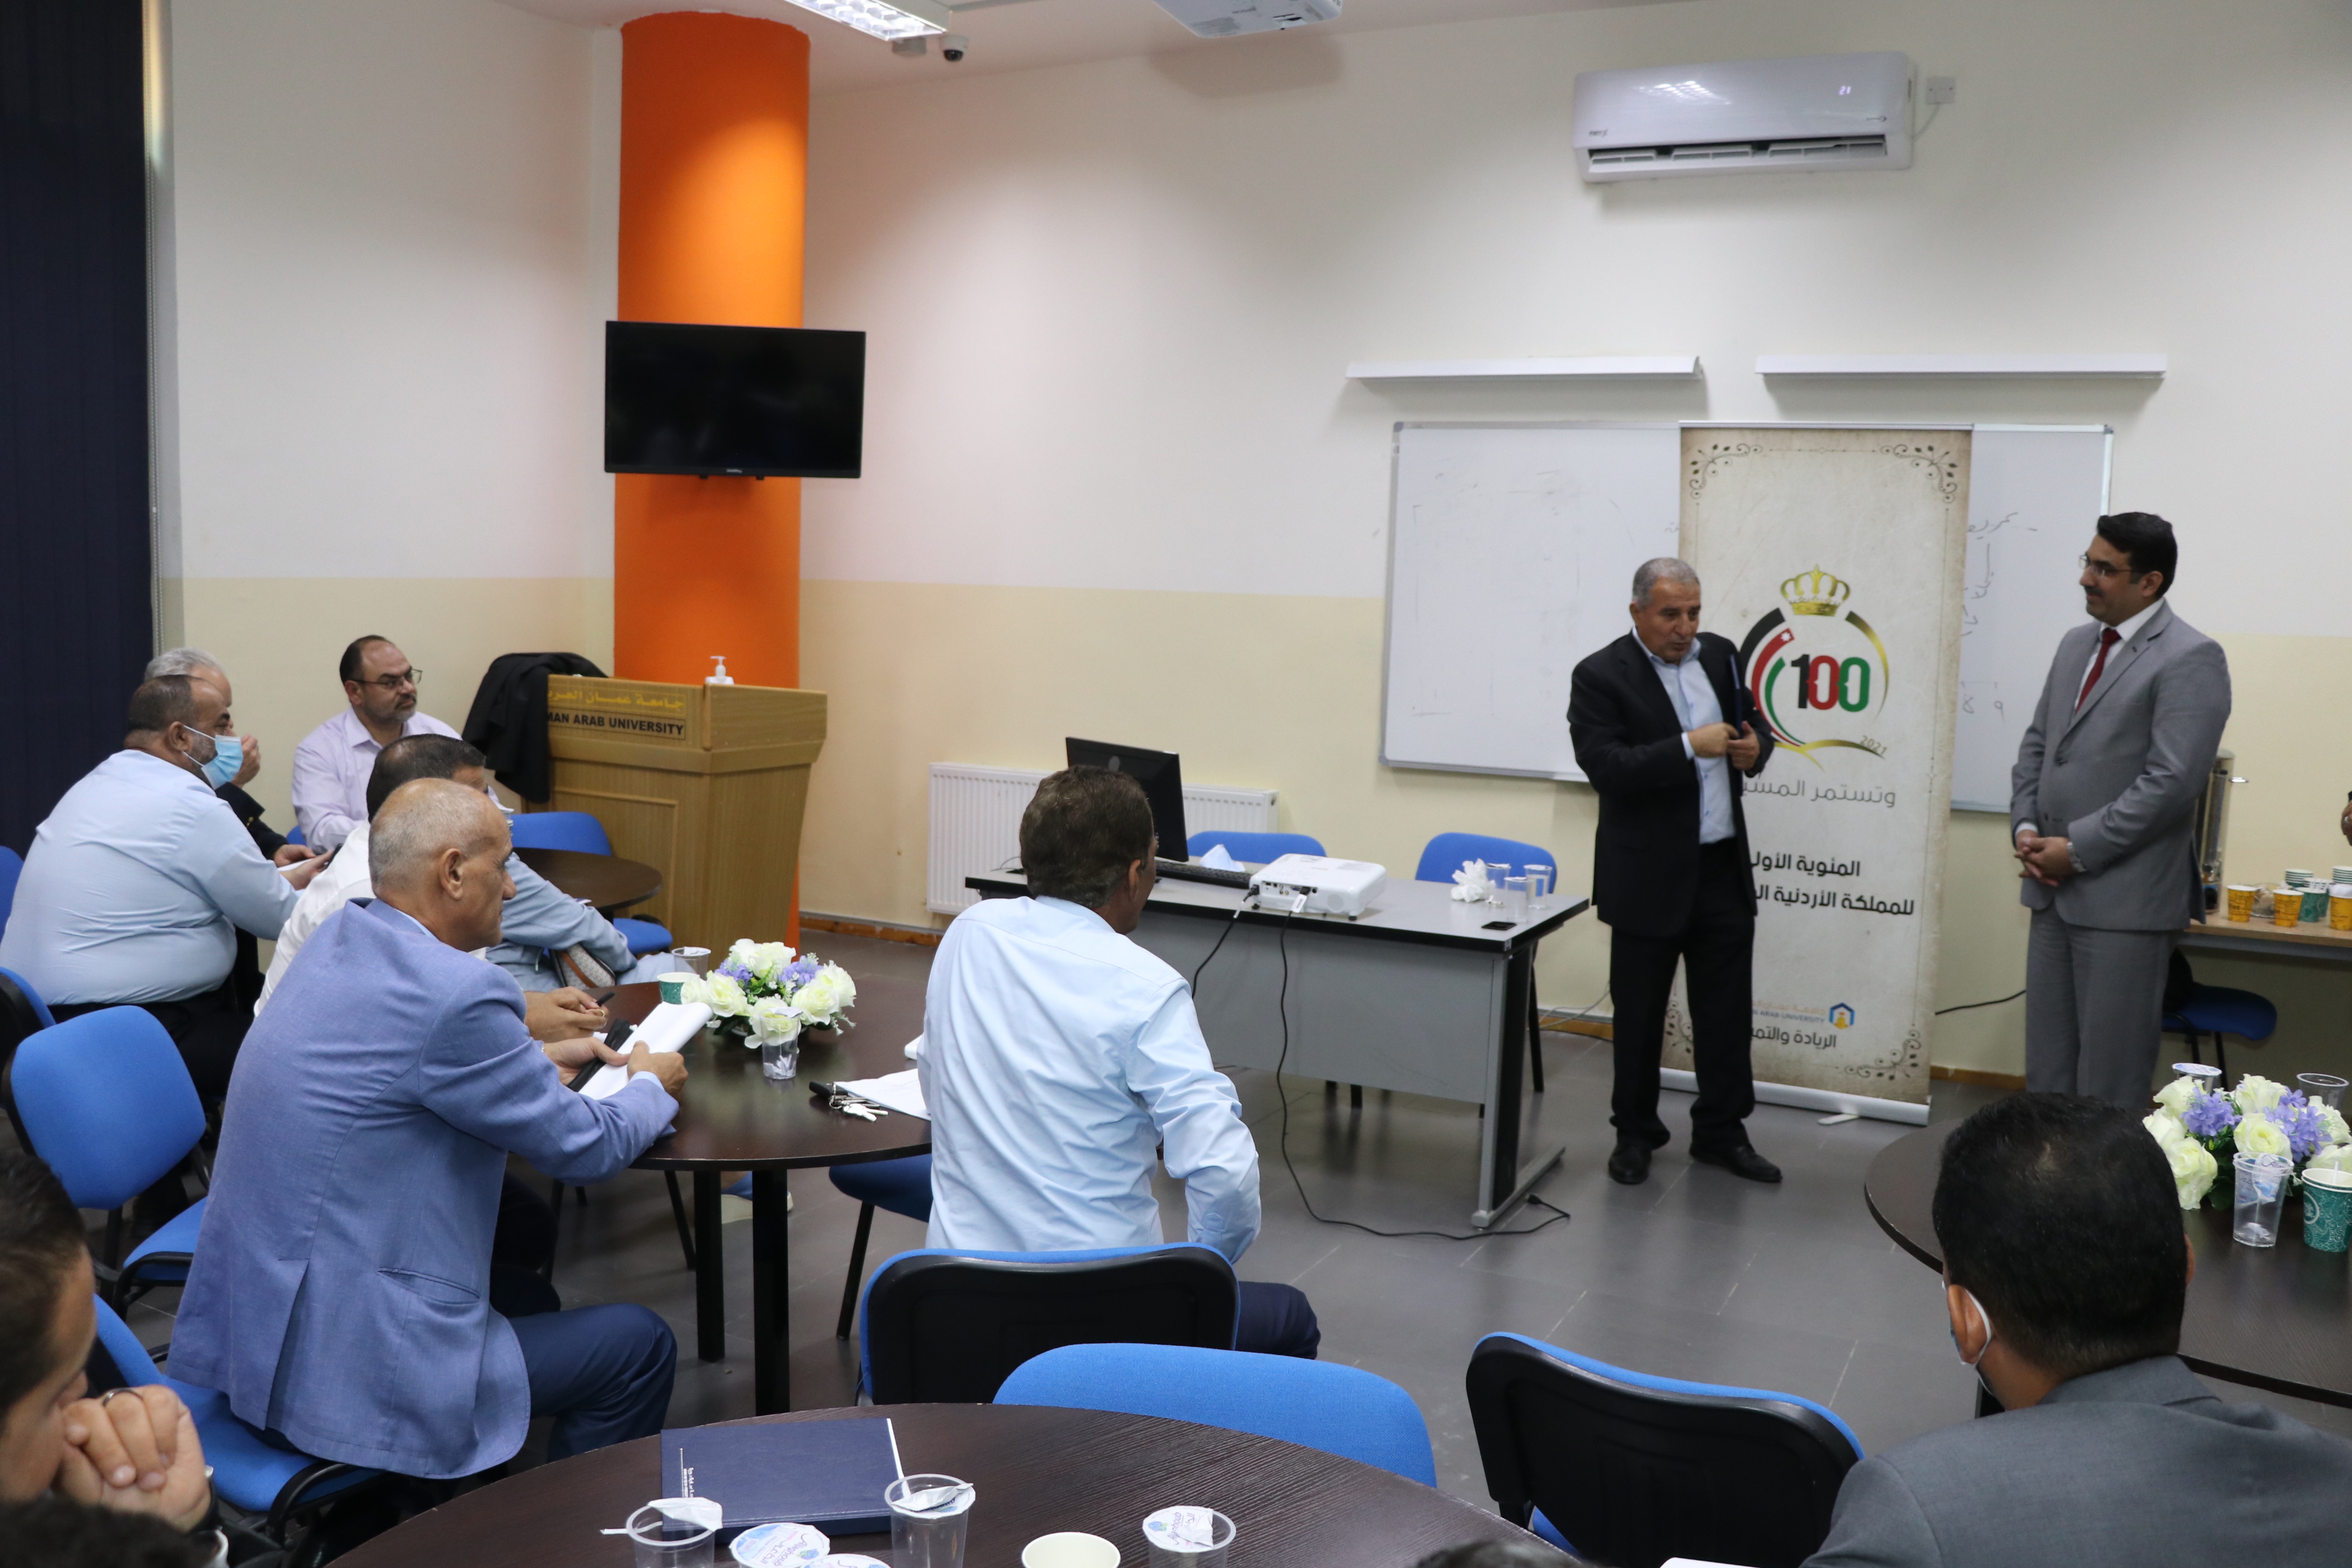 برامج تدريبية نوعية لأعضاء الهيئة التدريسية في "عمان العربية"2